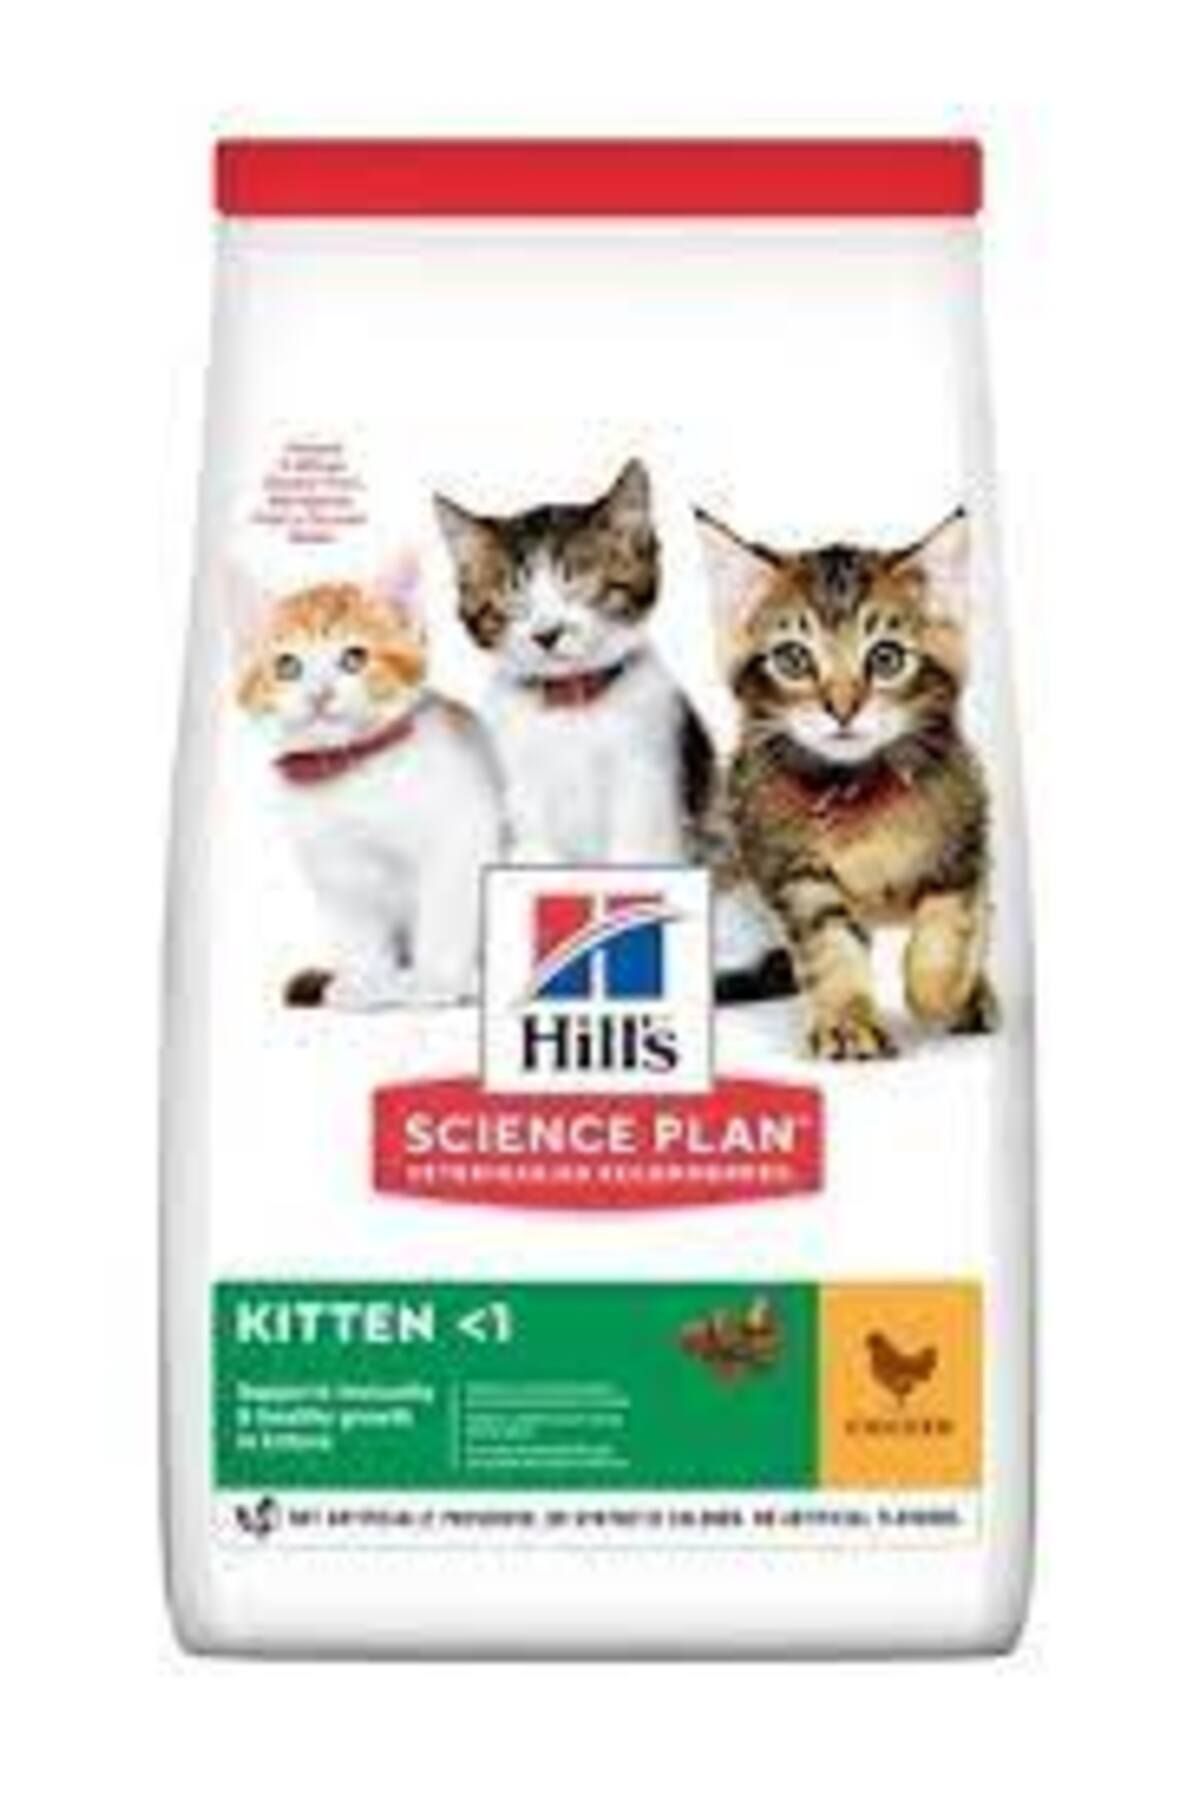 Hill's Kitten Tavuk Etli 1.5 Kg Yavru Kedi Maması